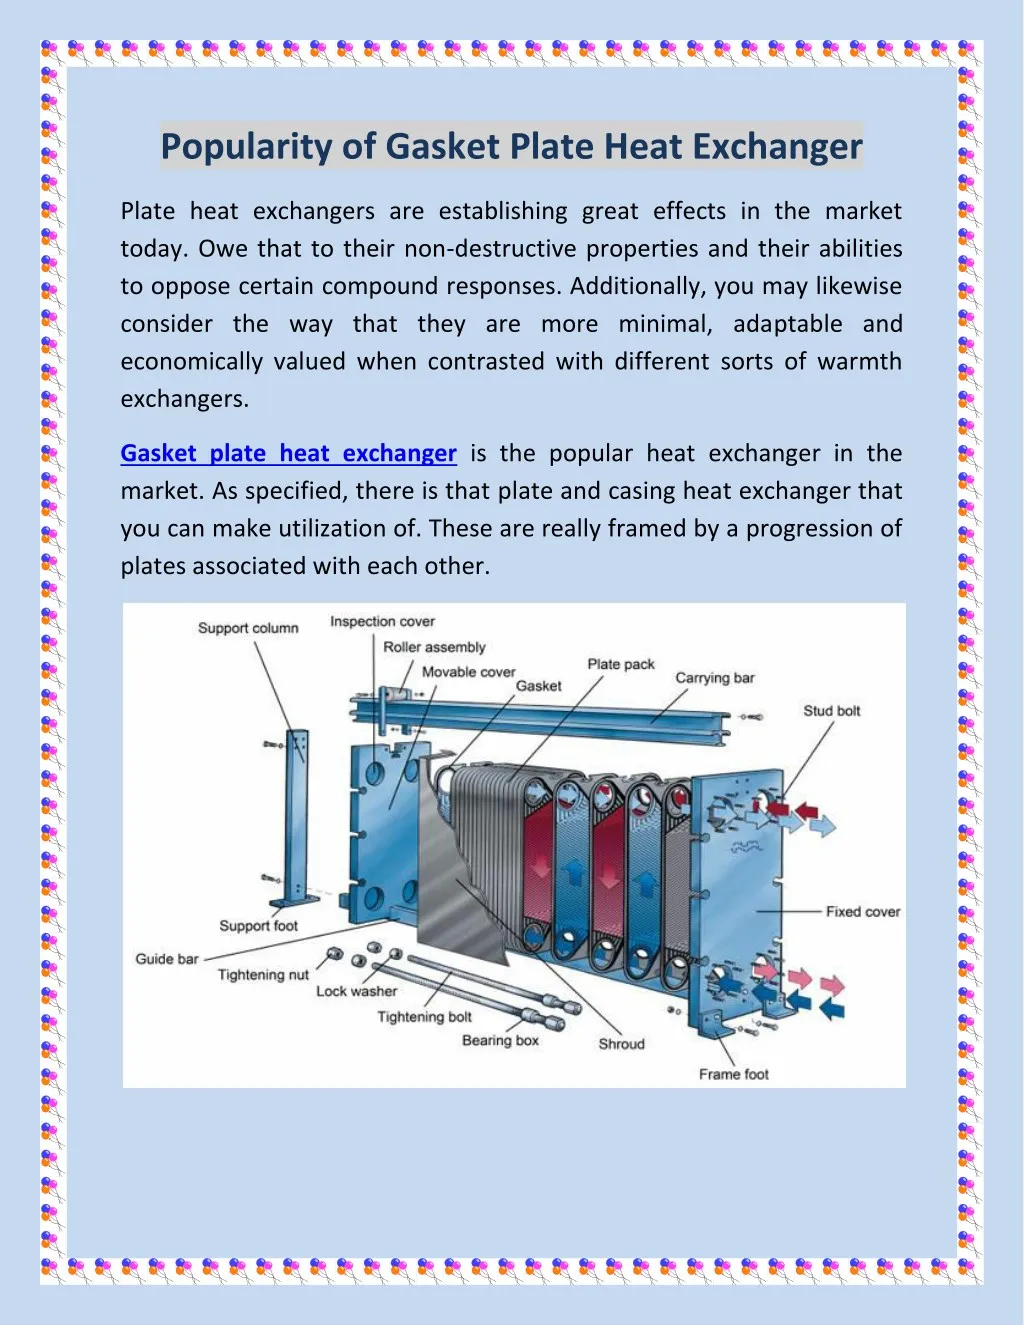 popularity of gasket plate heat exchanger